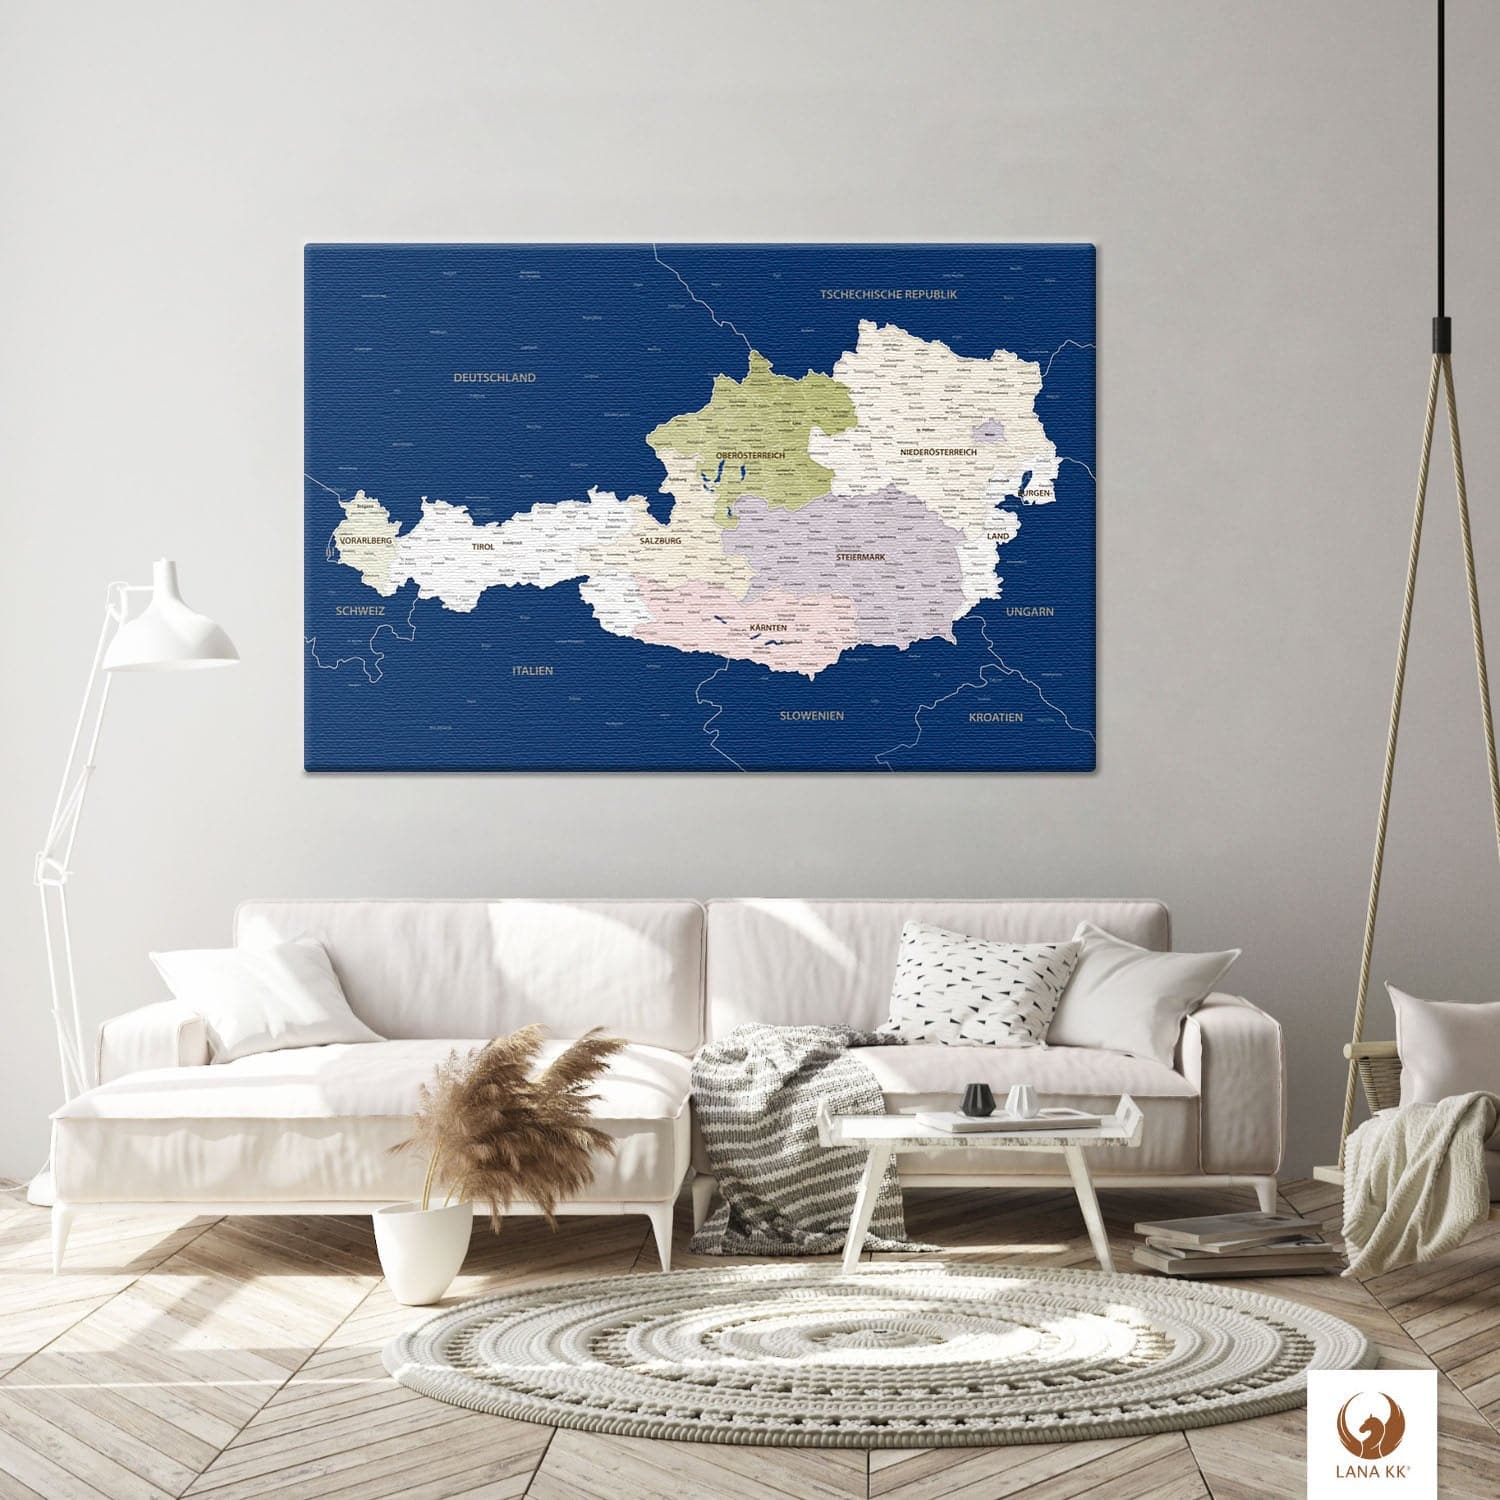 Die Welt als Zentrum Deiner Wohnung. Deine Österreichkarte Blau für sich mit ihren ausgewogenen Farben ideal in Dein Wohnkonzept ein.